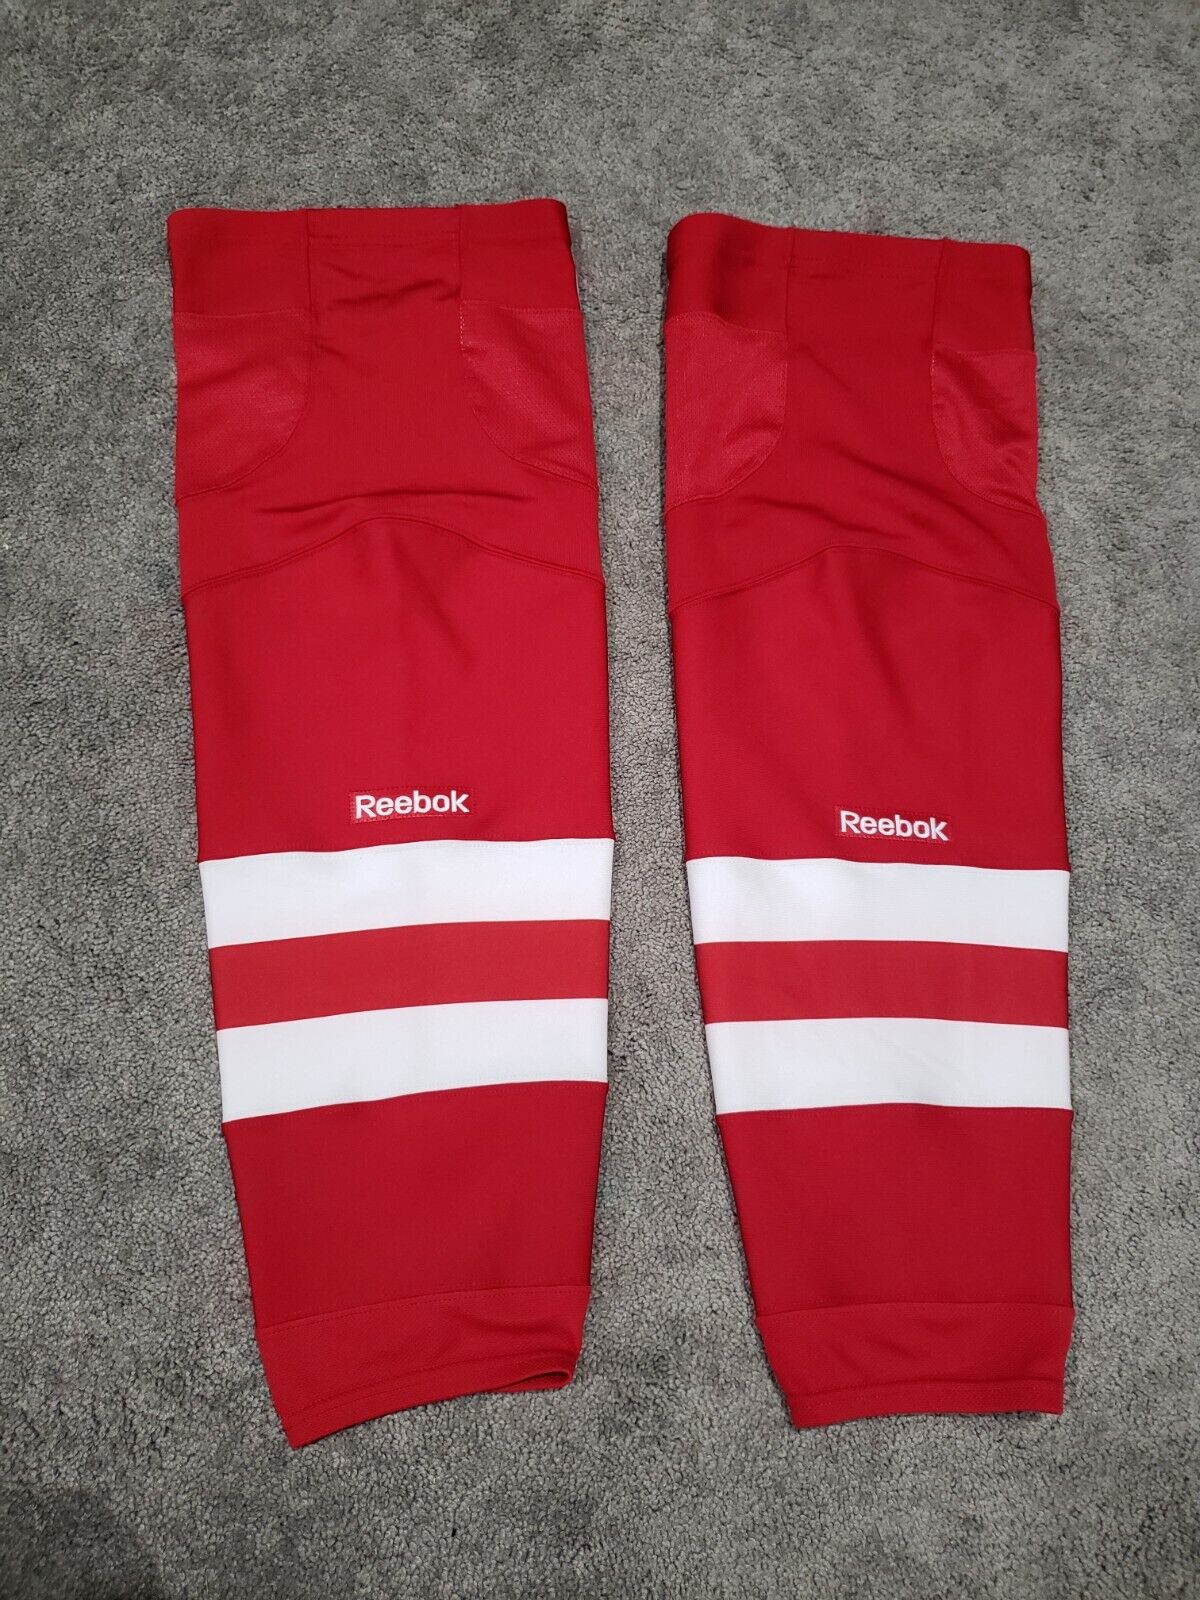 Reebok Hockey Socks Senior Medium Red White